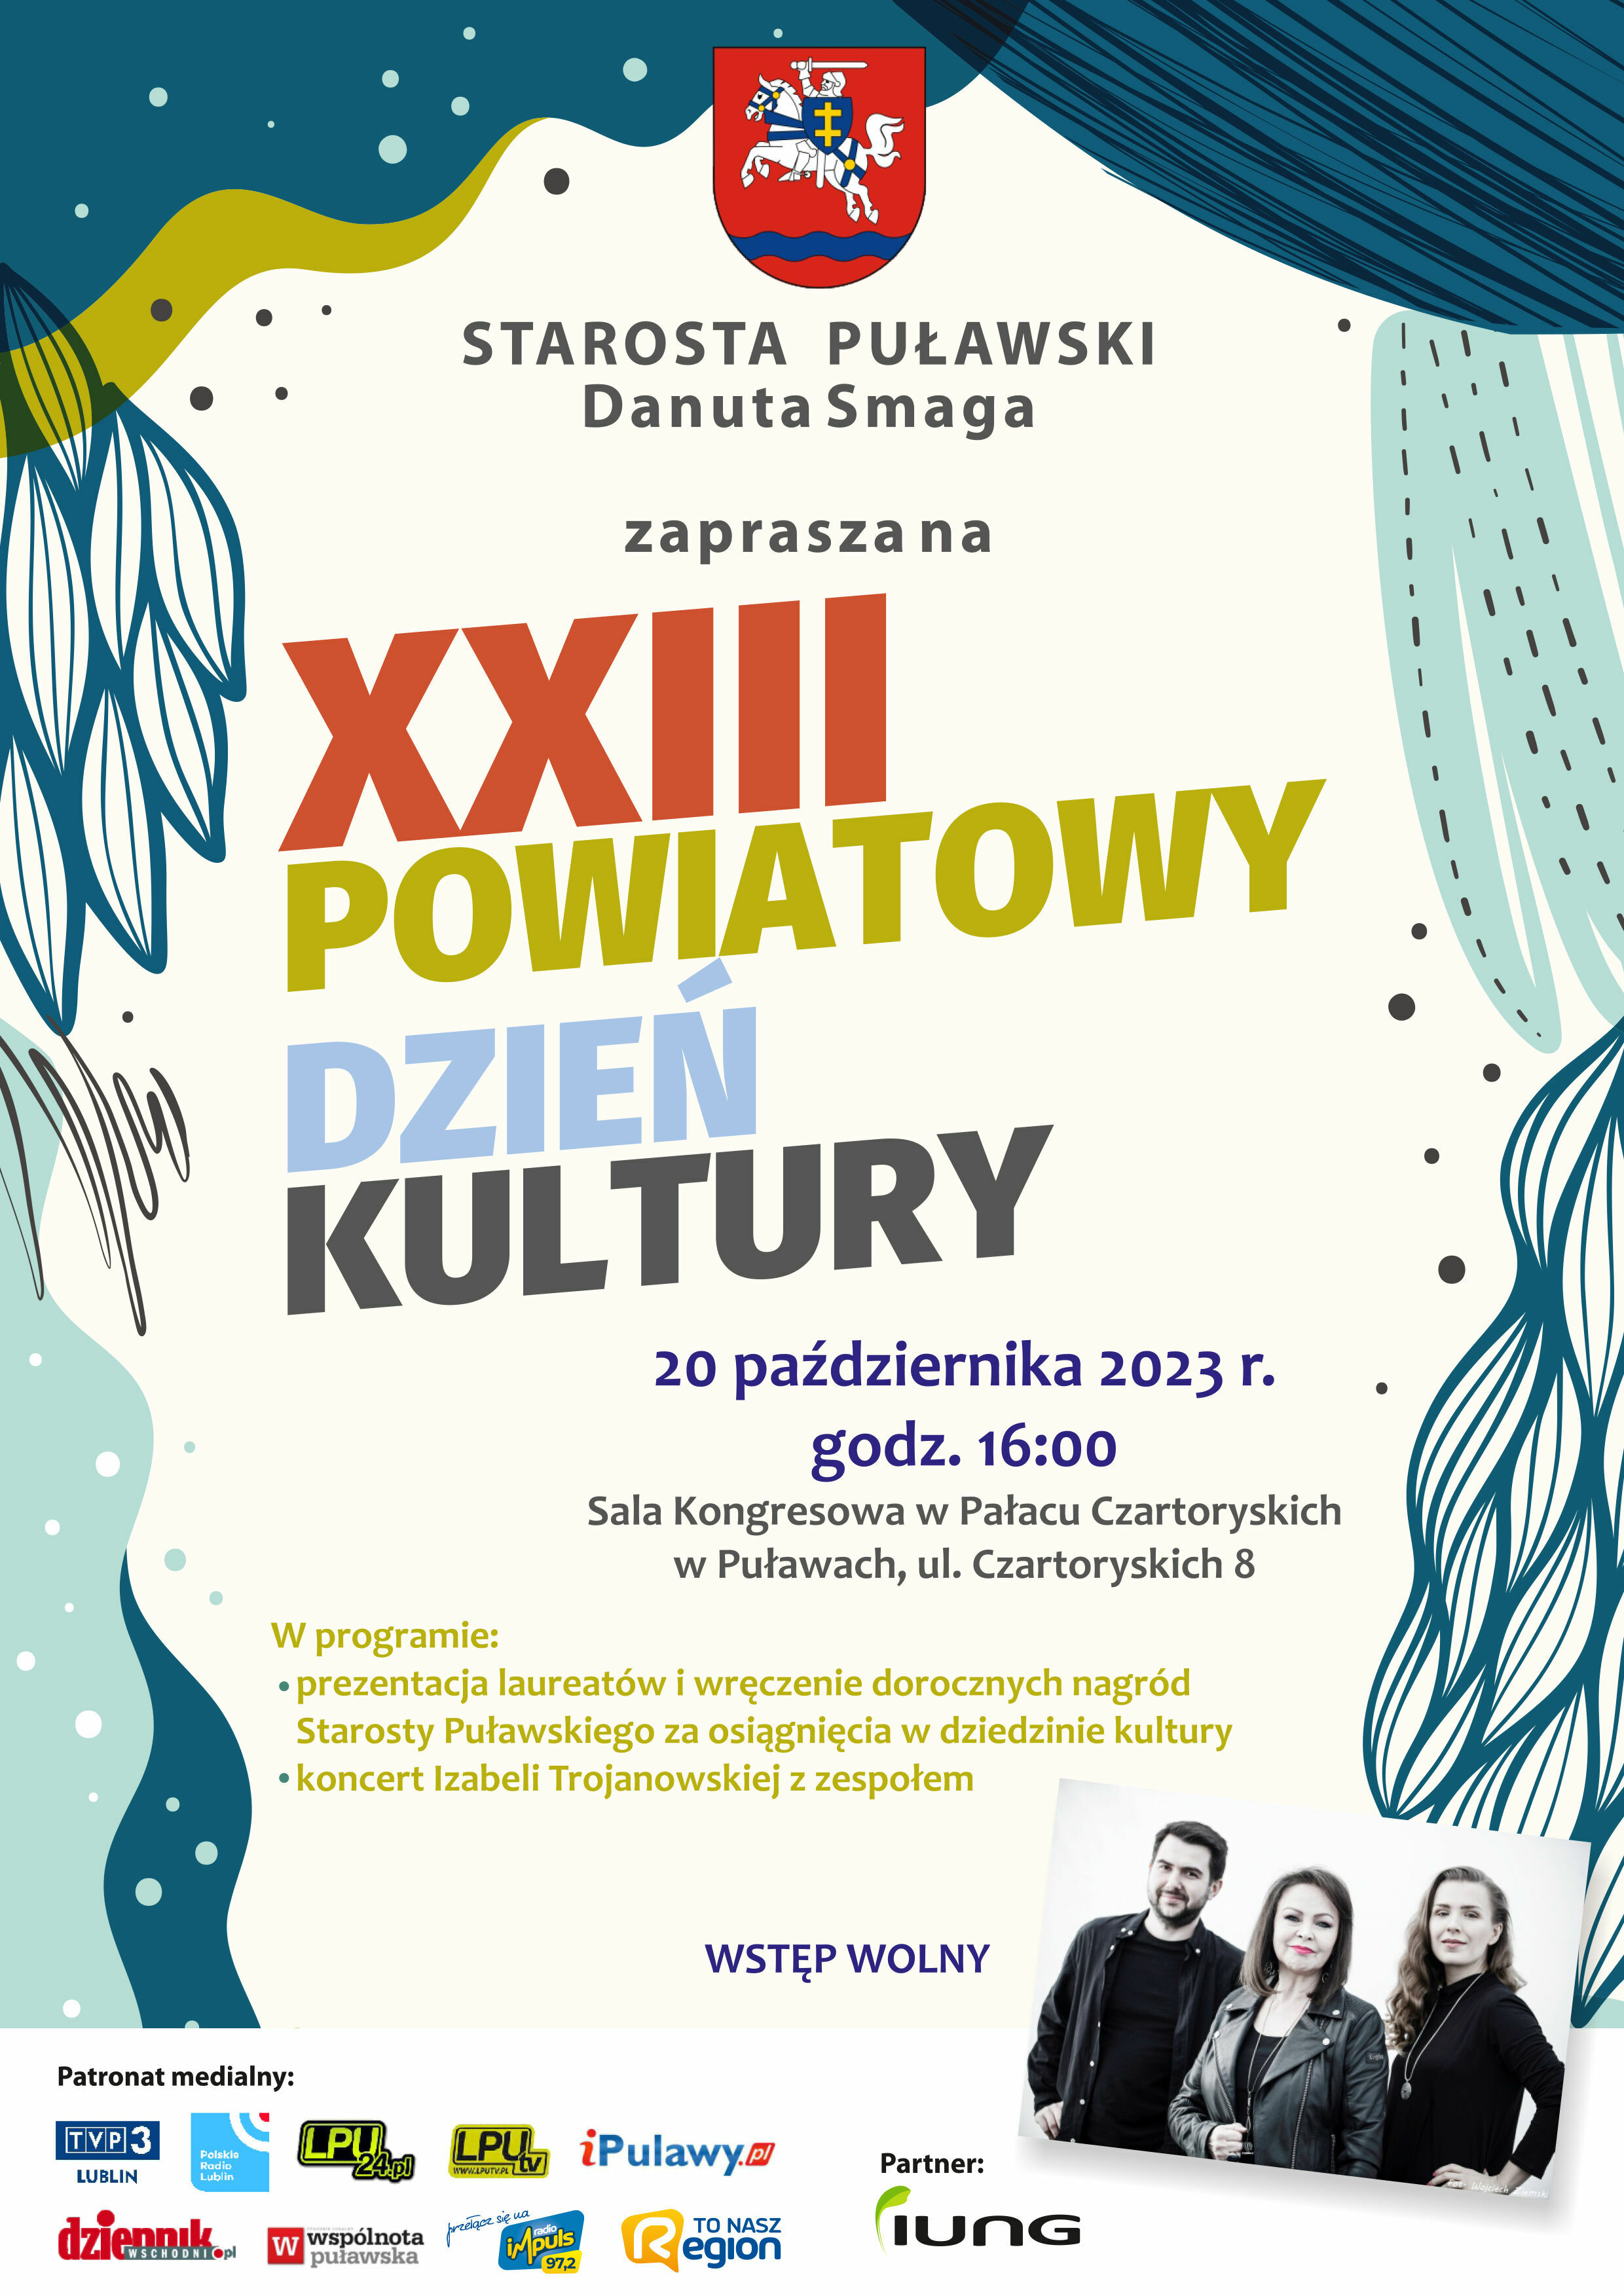 Plakat zapraszający na XX Powiatowy Dzień Kultury w Puławach z graficznymi elementami, tekstem i zdjęciami organizatorów.